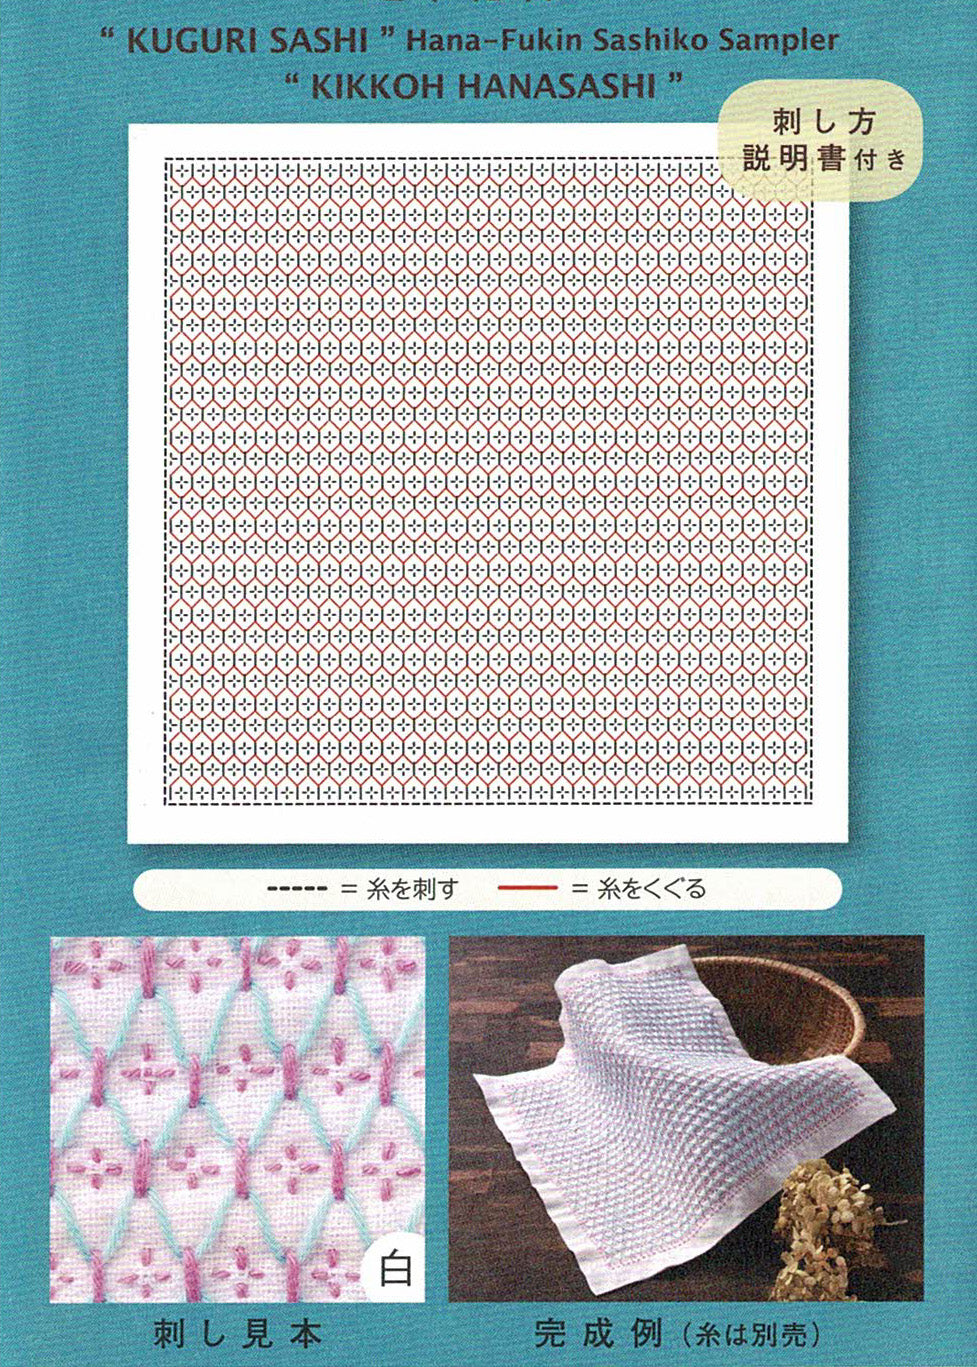 Sashiko Weaving (Kuguri-Sashi) Sampler Cloth - Kikkoh Hansashi White